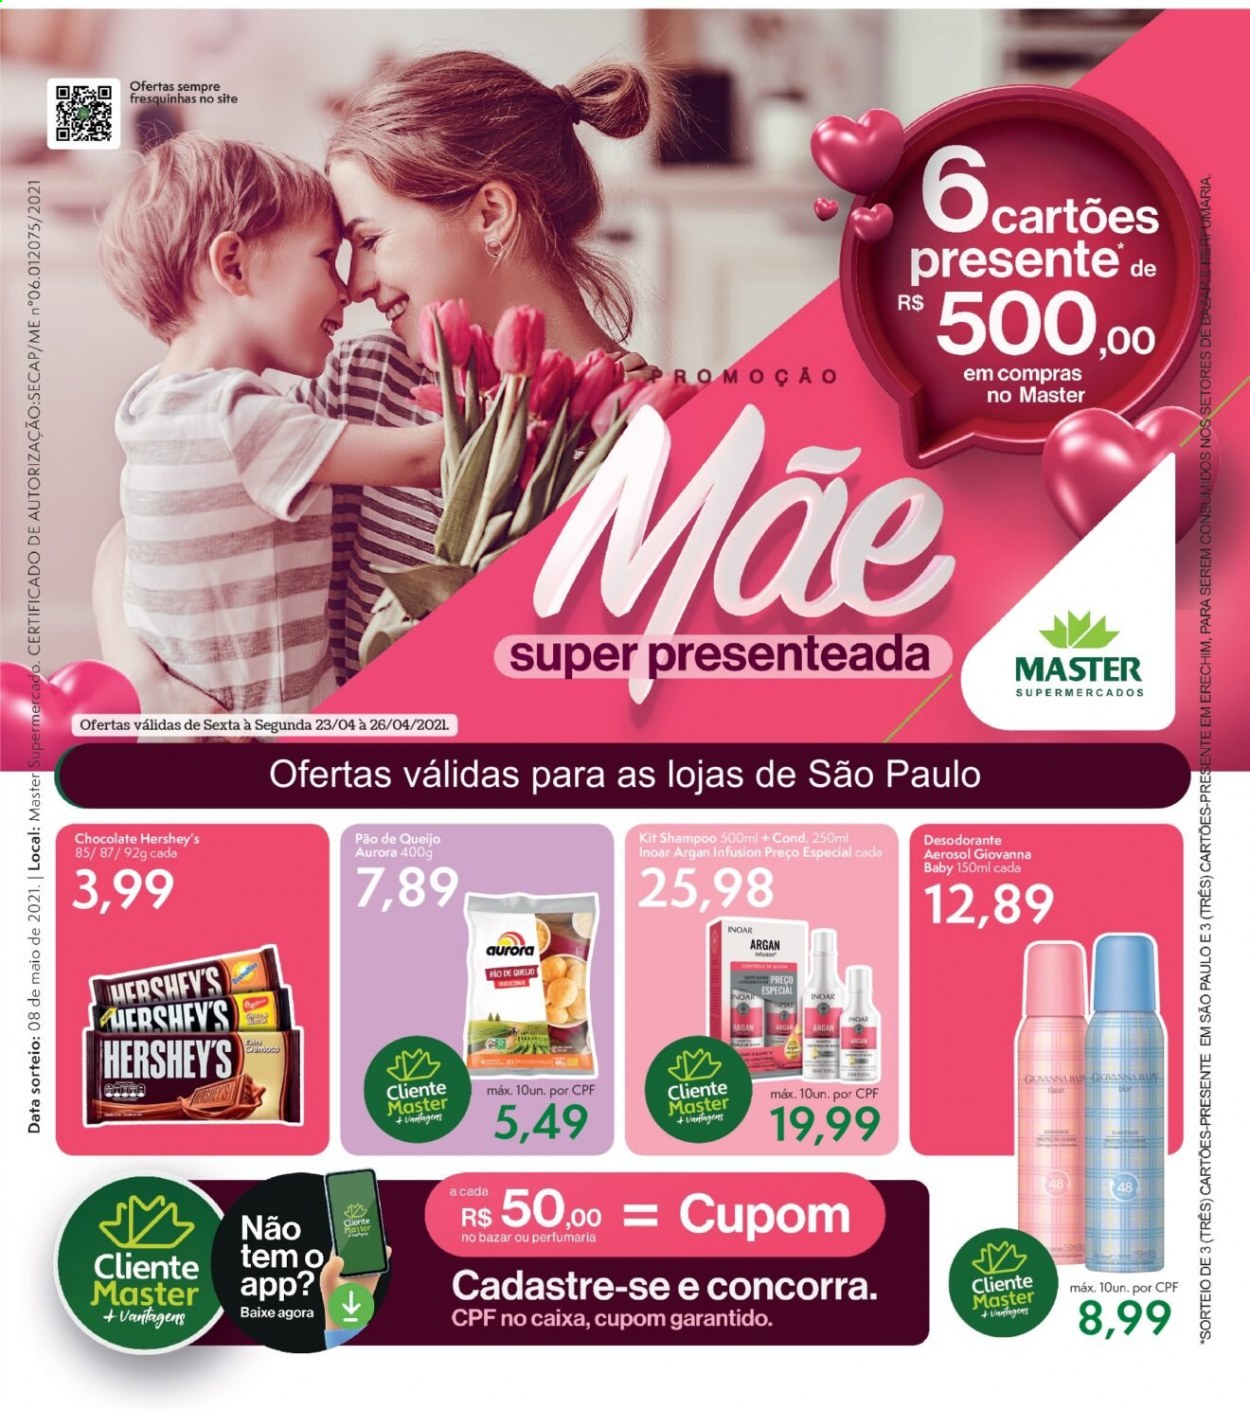 thumbnail - Folheto Master Supermercados - 23/04/2021 - 26/04/2021 - Produtos em promoção - pão de queijo, pão, chocolate, Aurora, shampoo, desodorante, antitranspirante. Página 1.